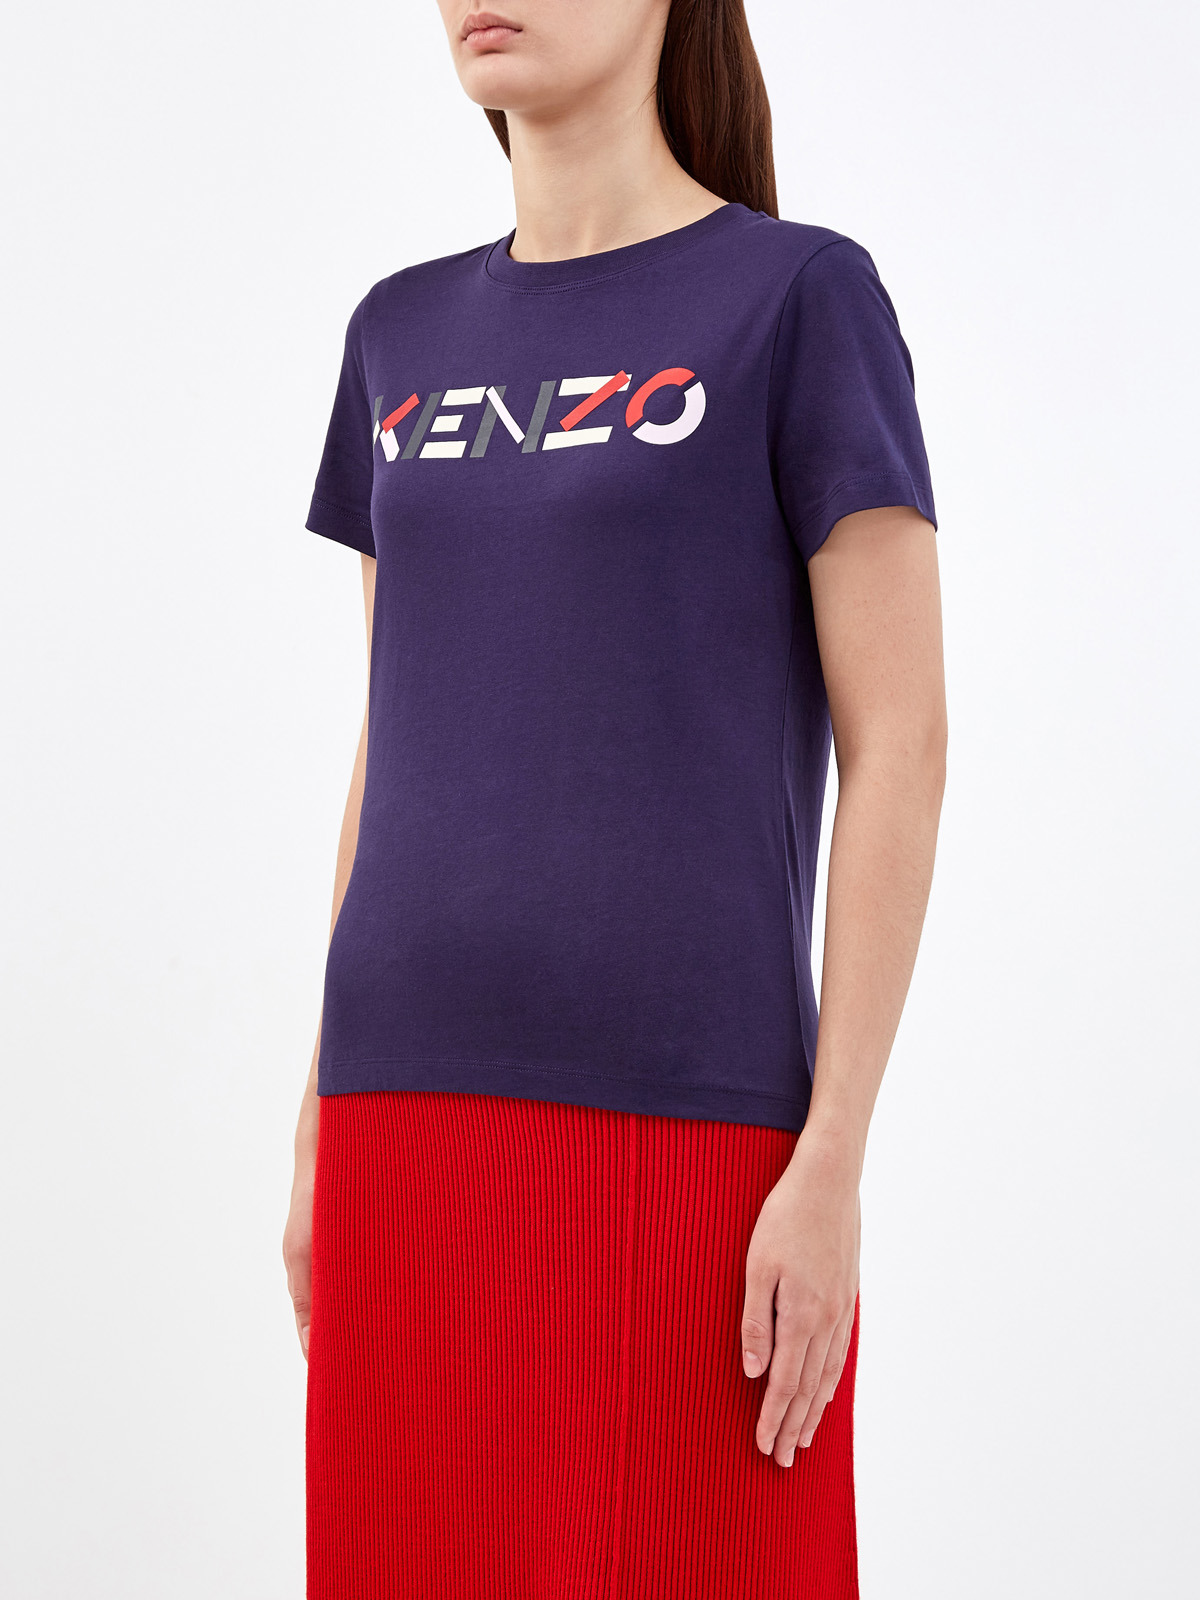 Однотонная футболка из натурального хлопка с принтом KENZO, цвет синий, размер M;L;S - фото 3